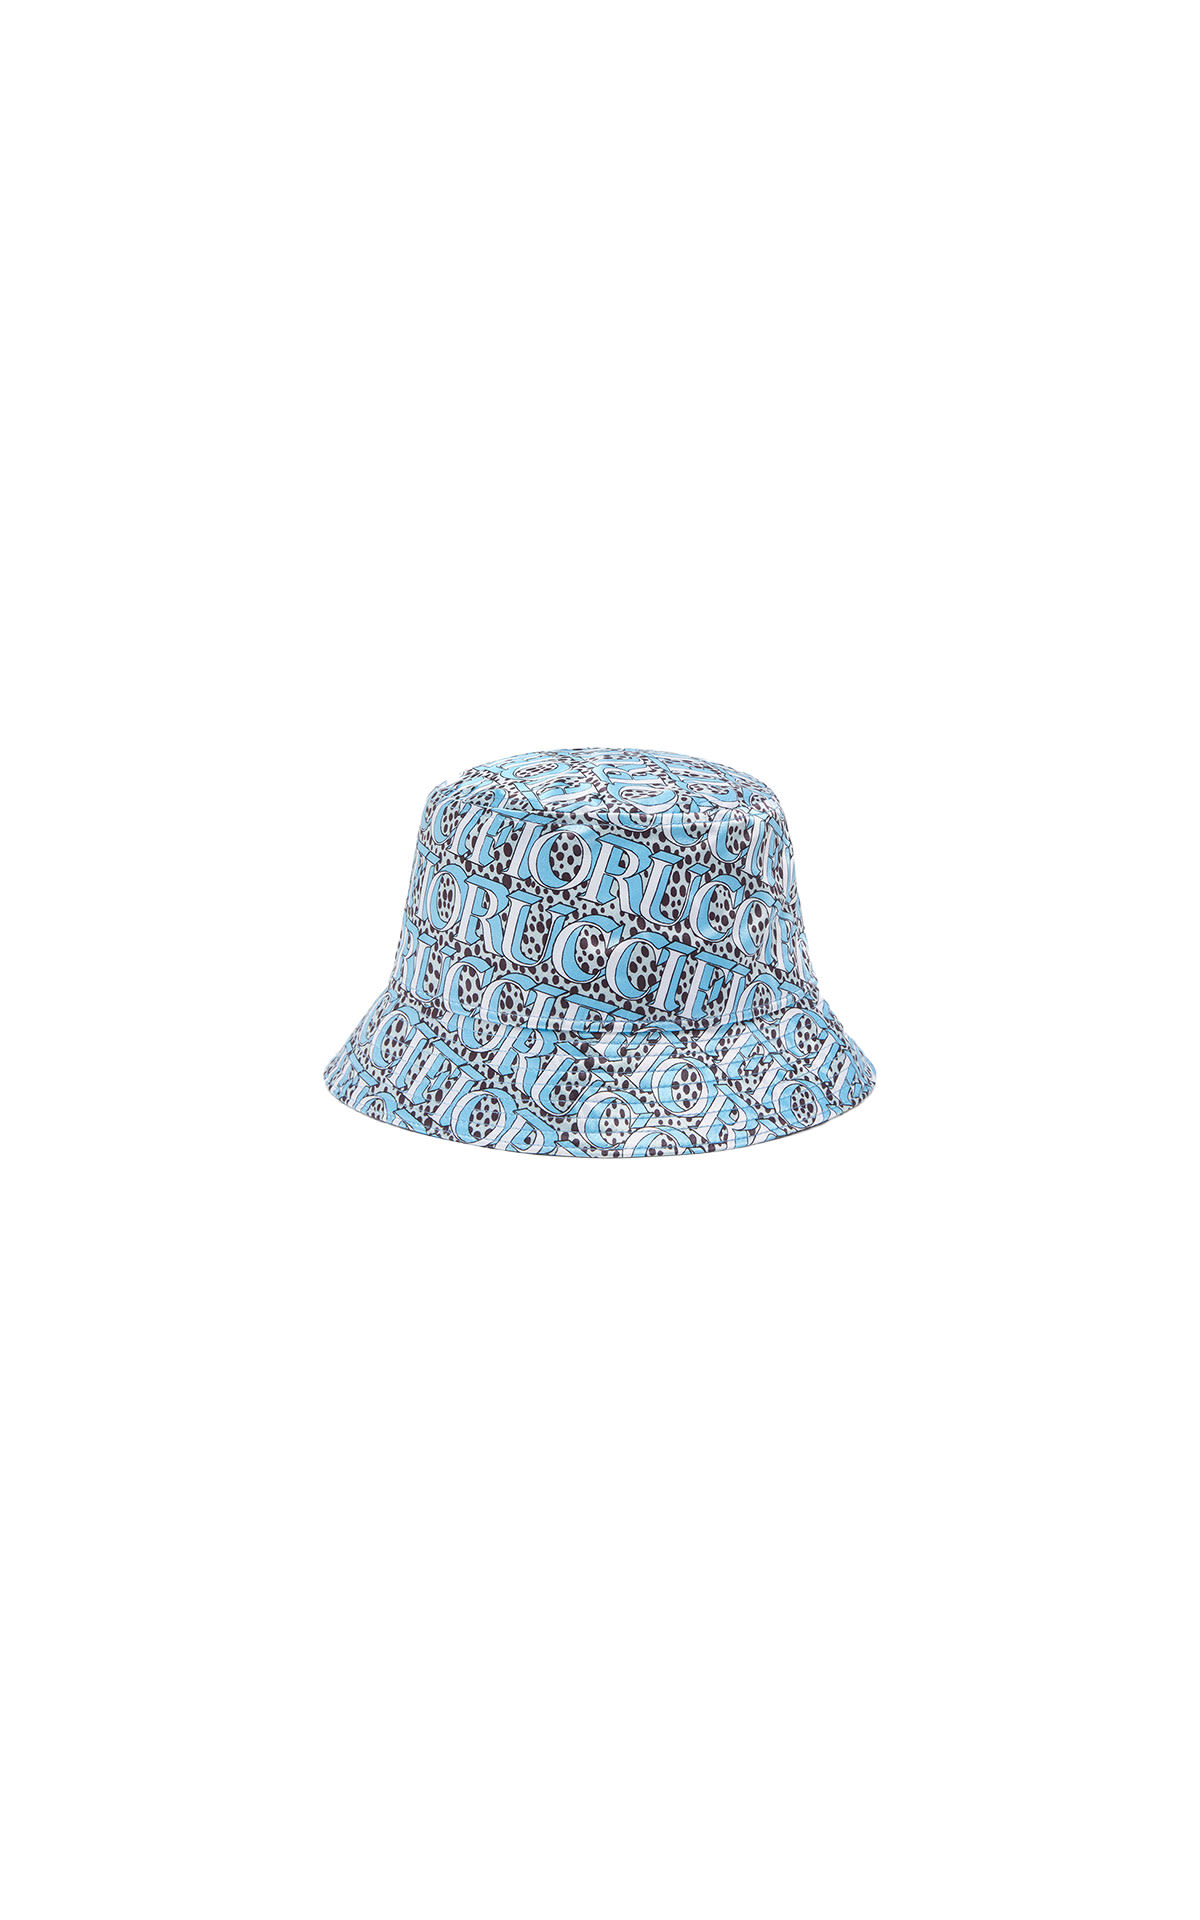 Fiorucci Snow Leopard Bucket Hat from Bicester Village